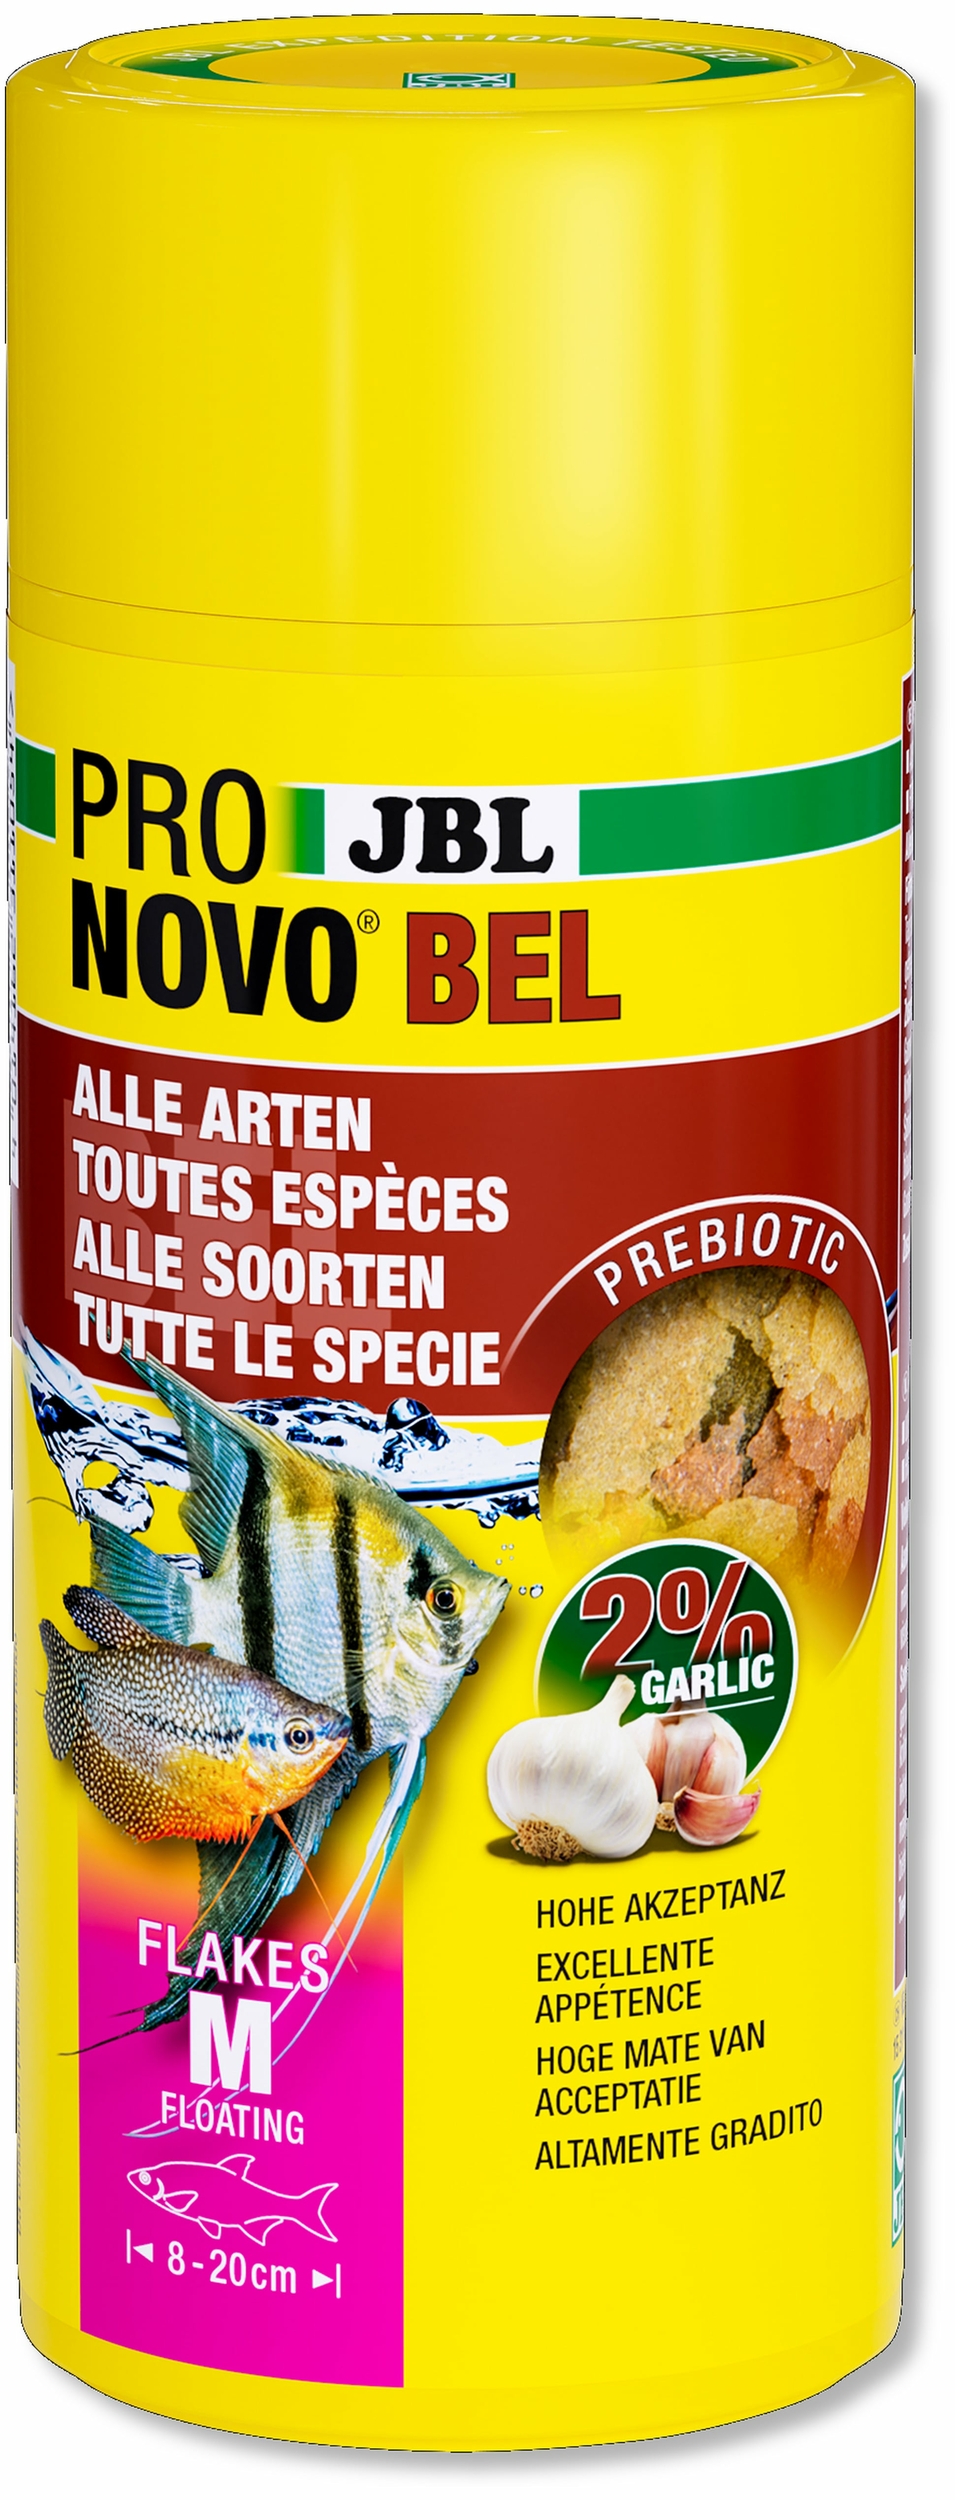 jbl-pronovo-bel-flakes-m-250-ml-nourriture-de-base-en-flocons-pour-tous-poissons-d-aquarium-de-8-a-20-cm-min